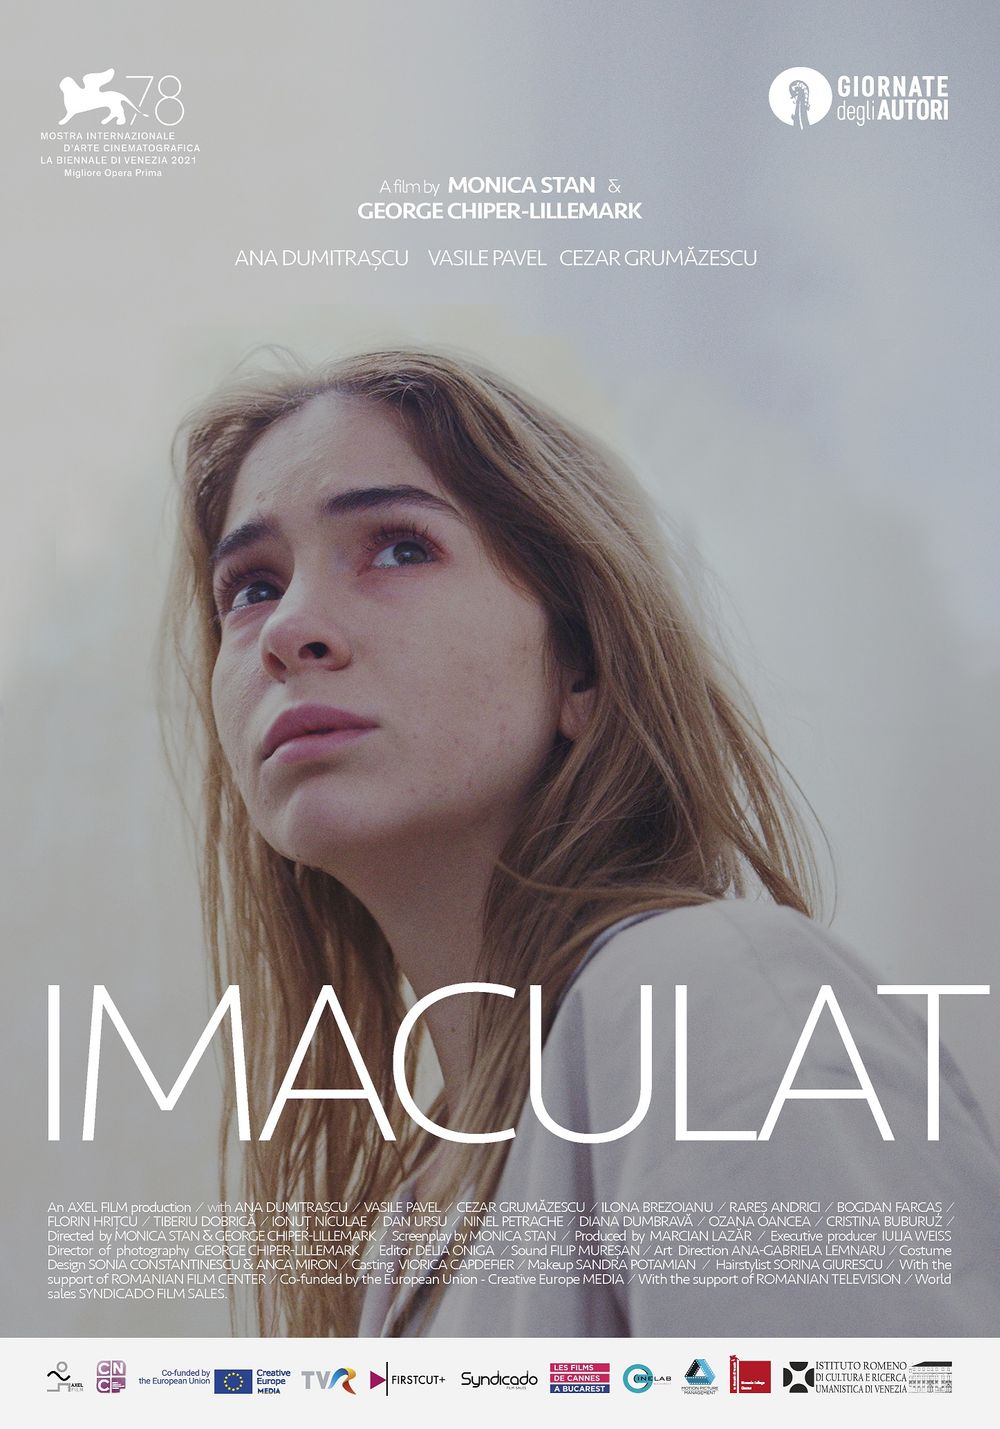 Poster al filmului "Imaculat"